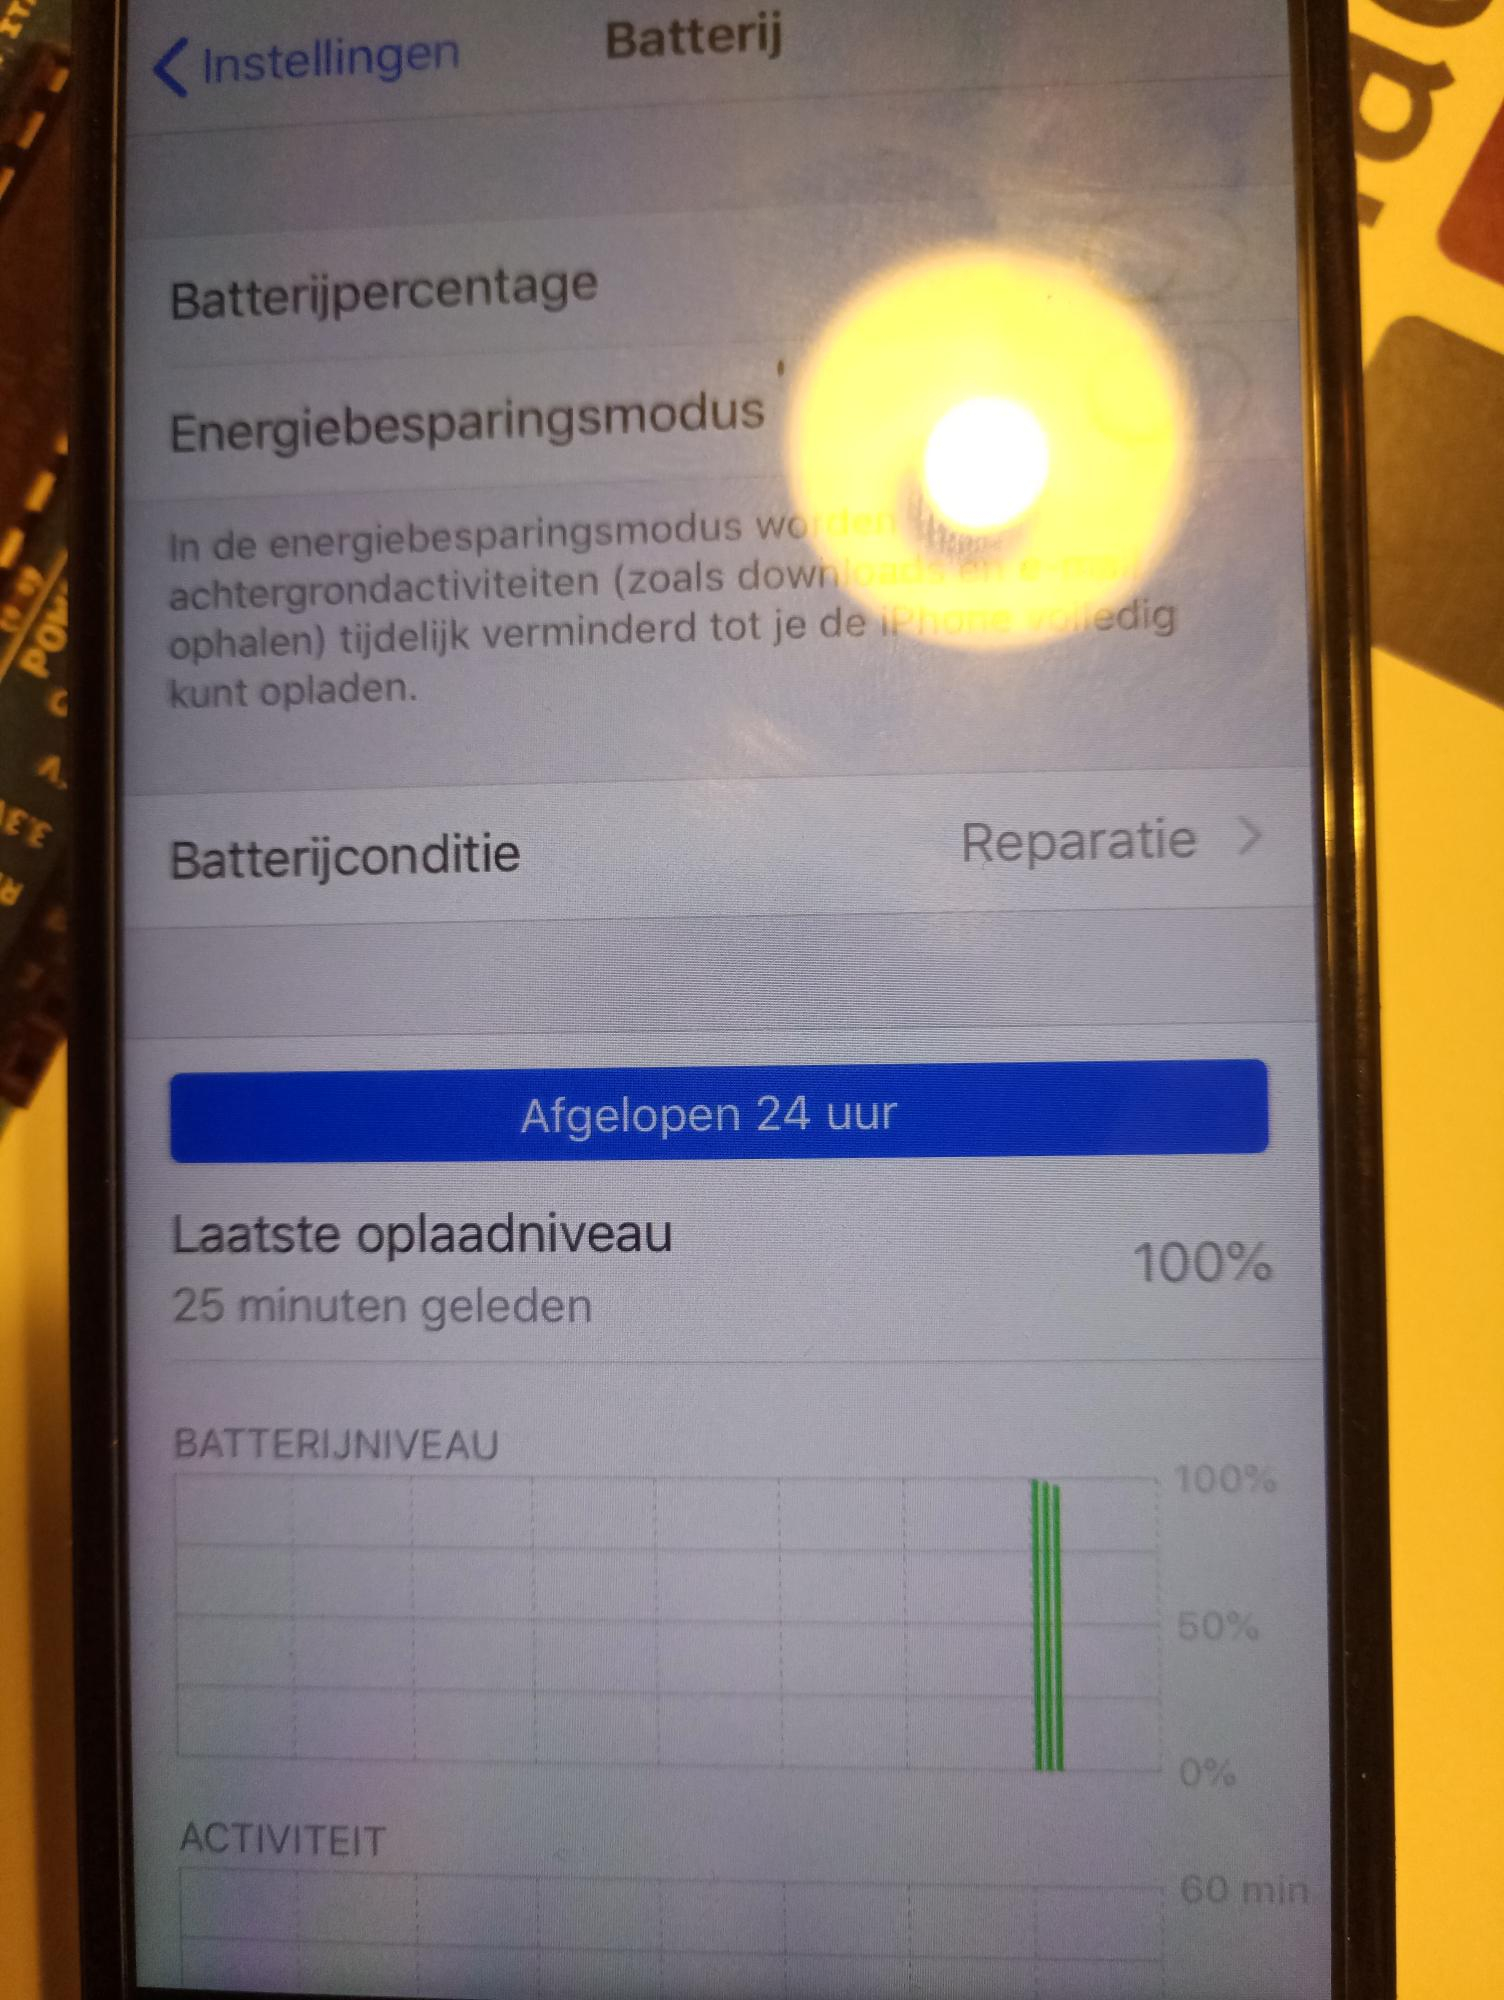 Miniatuur ik ontbijt Schuur Iphone 6S batterijconditie ''reperatie'' en crasht regelmatig na update IOS  12 — appletips genius